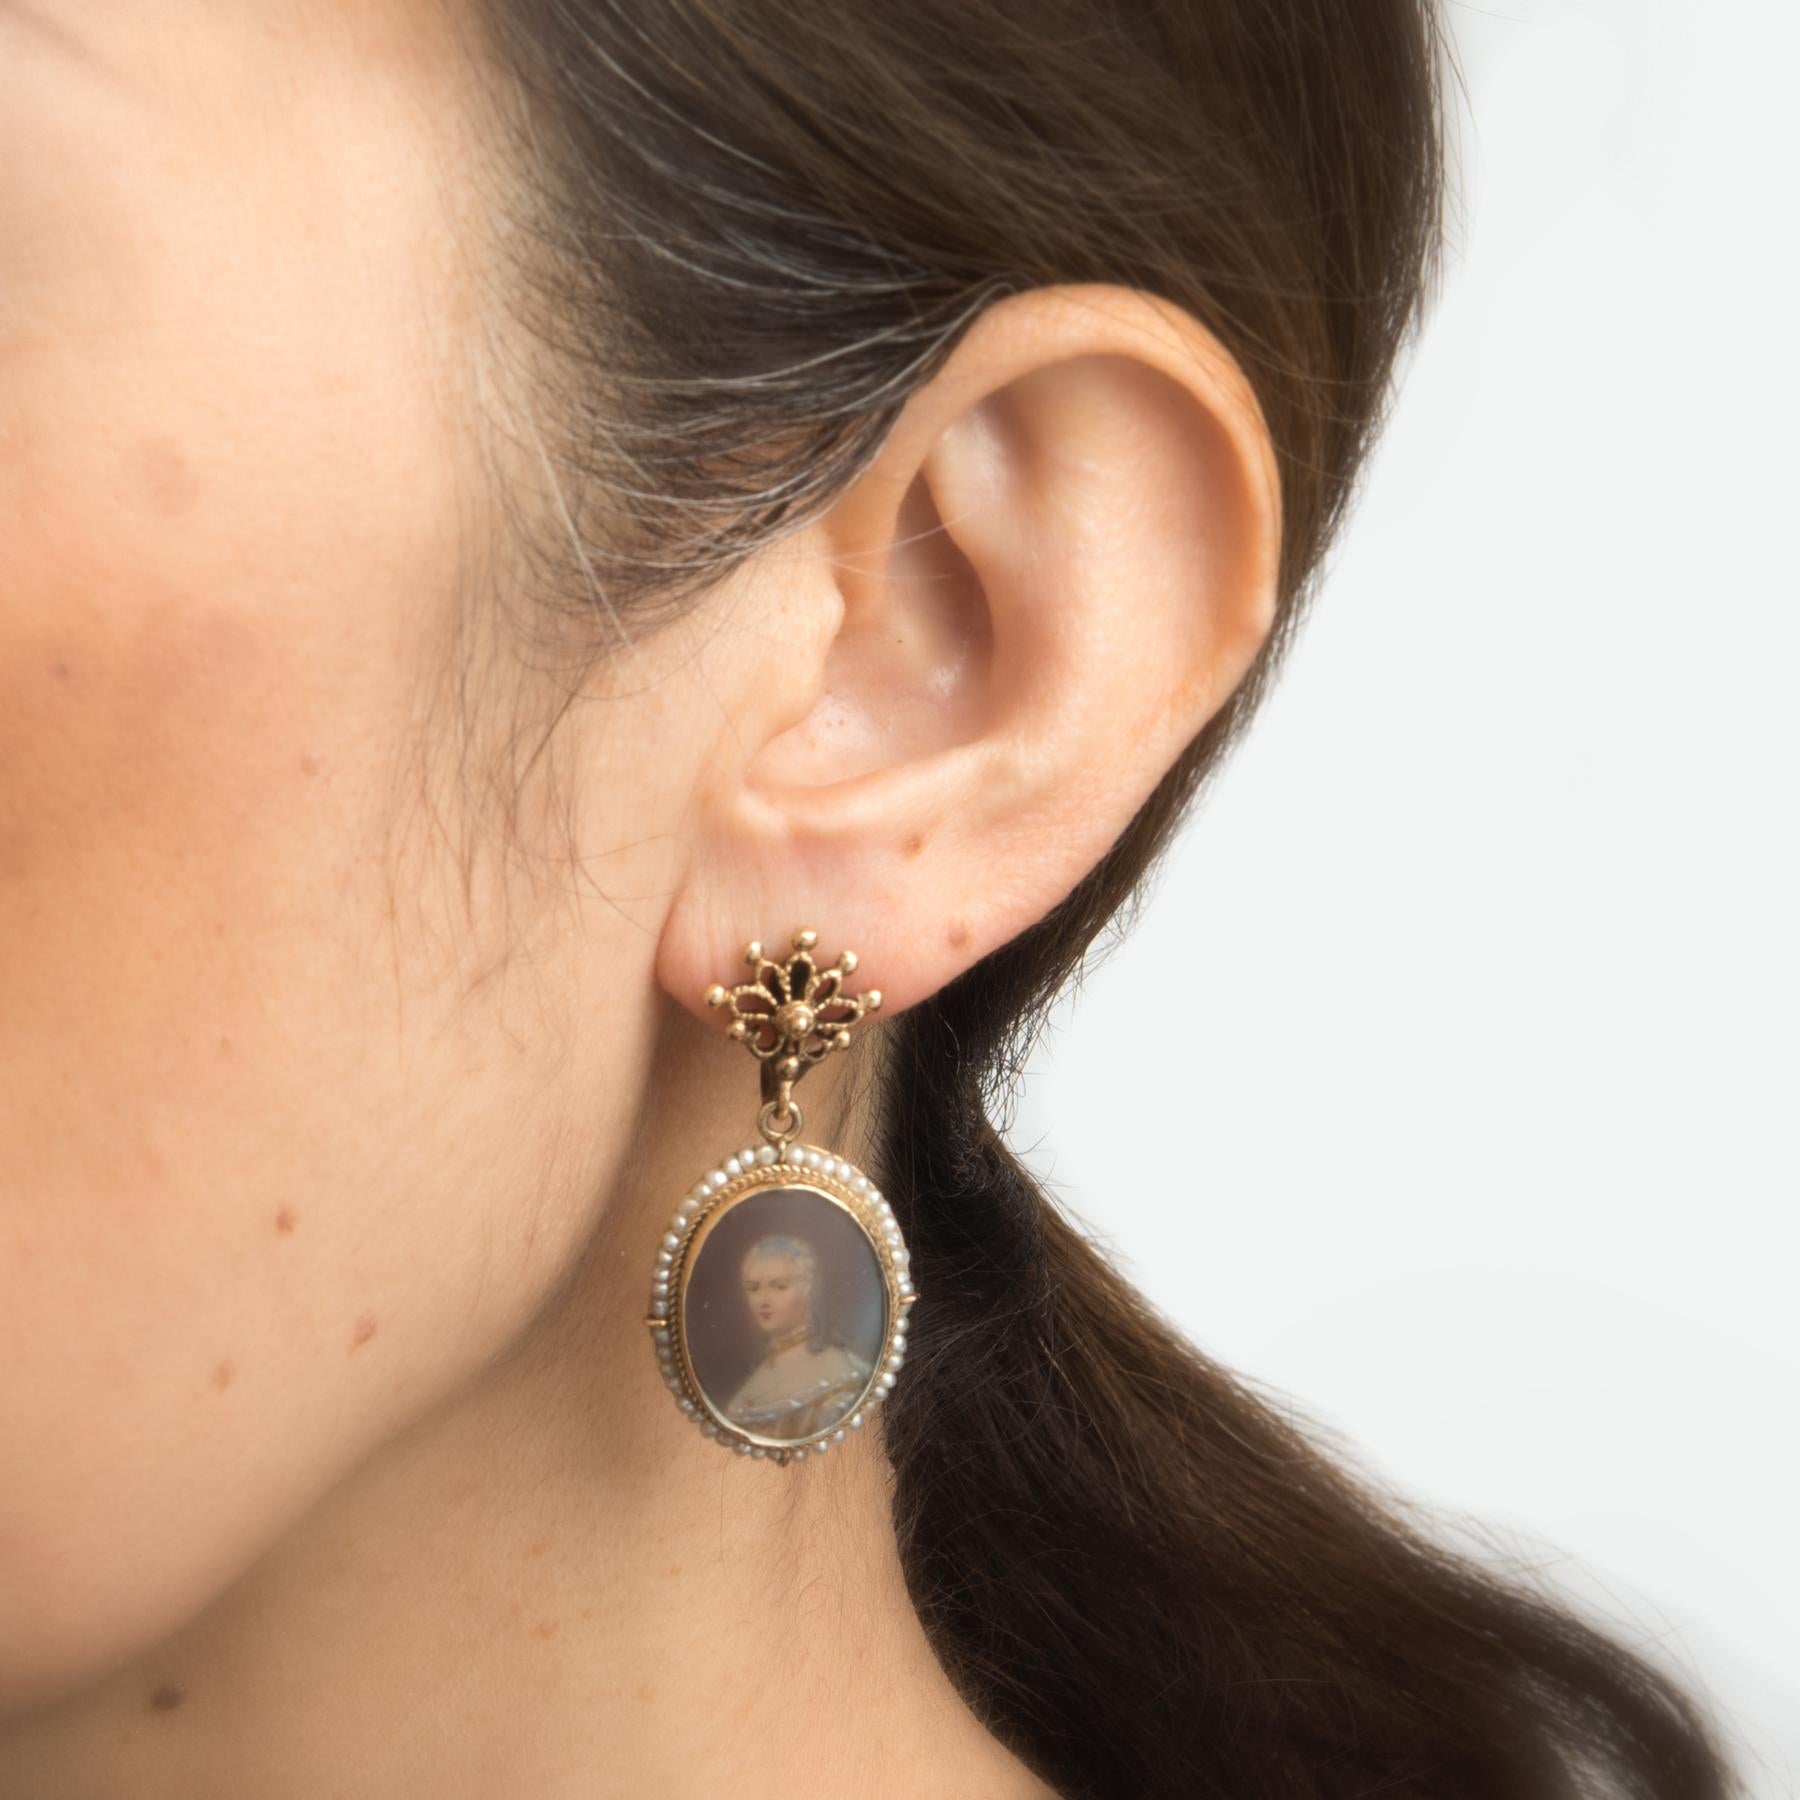 Women's Vintage Portrait Earrings 14 Karat Gold Drops Estate Fine Jewelry Seed Pearls